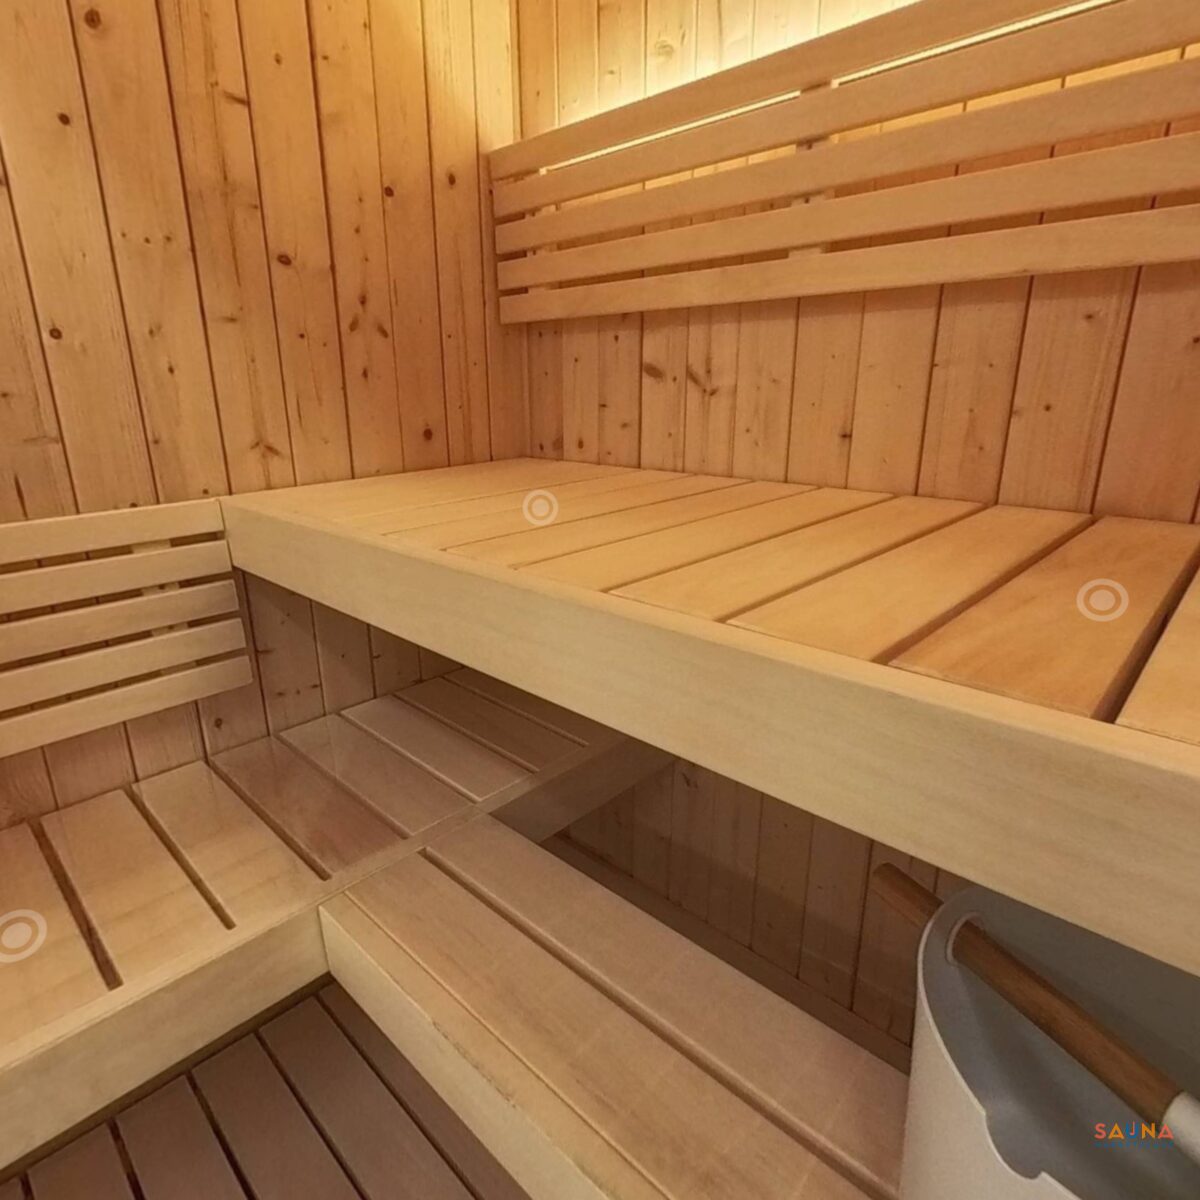 Saunalife X6 Indoor Sauna Kit Virtual Tour